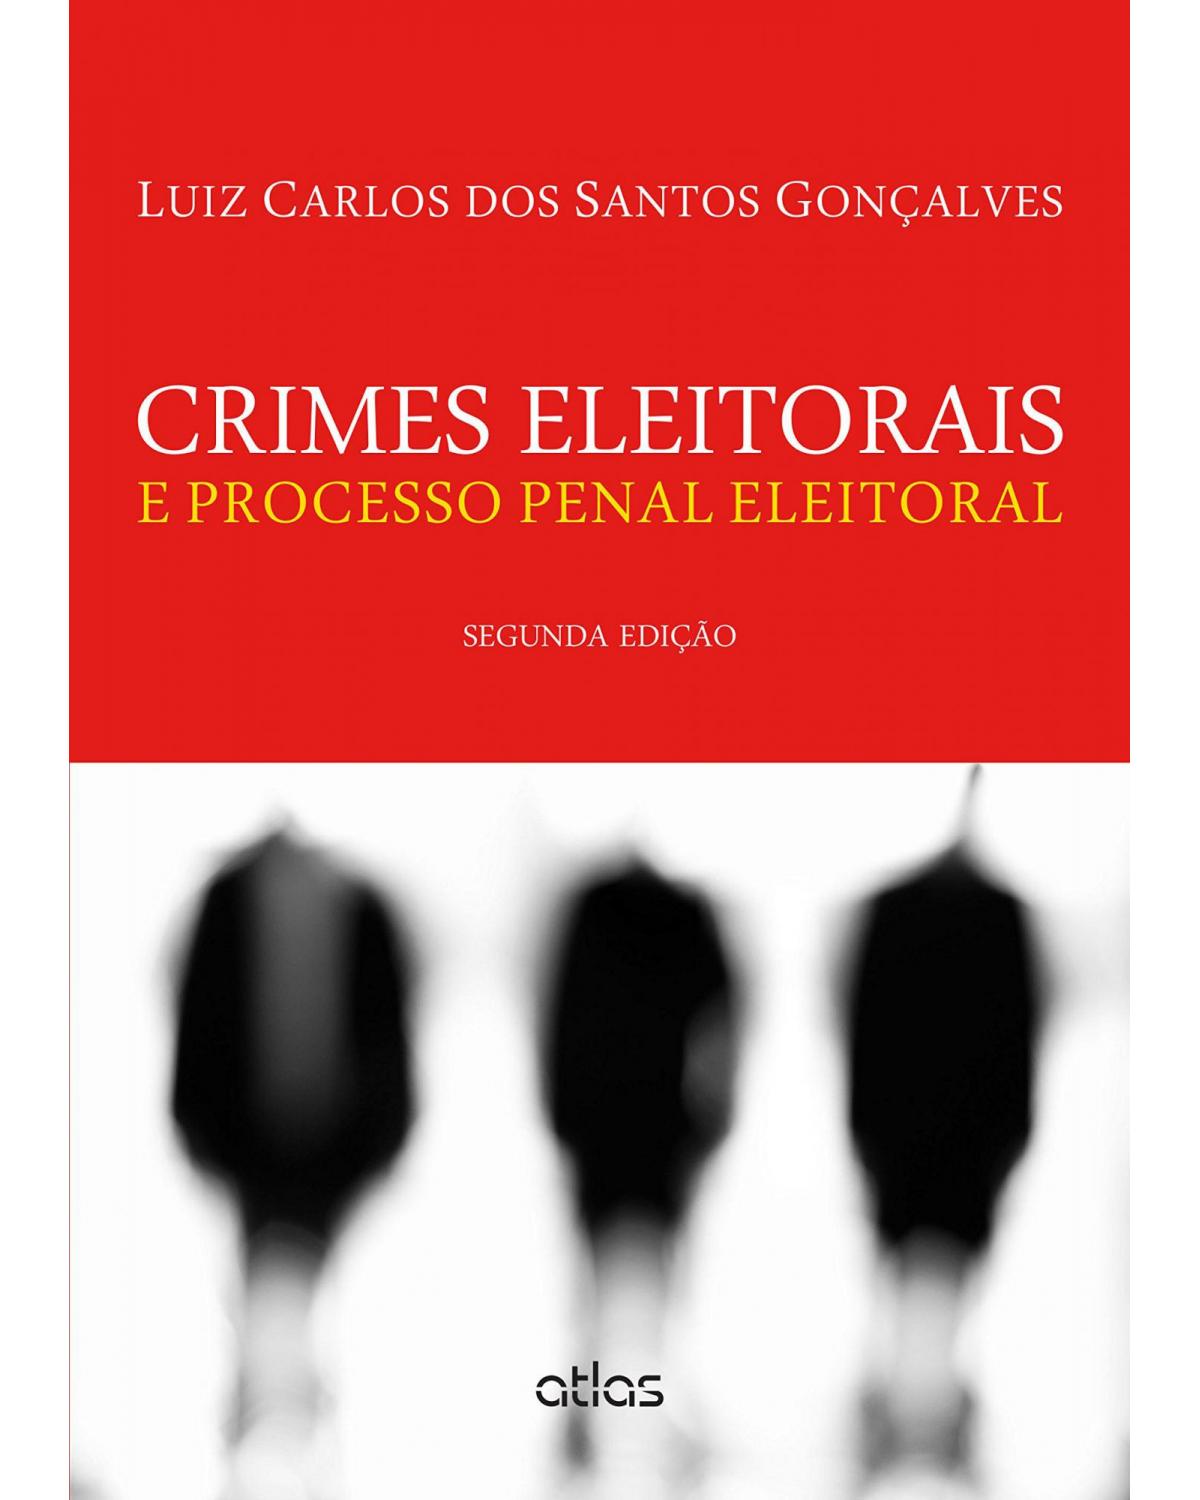 Crimes eleitorais e processo penal eleitoral - 2ª Edição | 2015